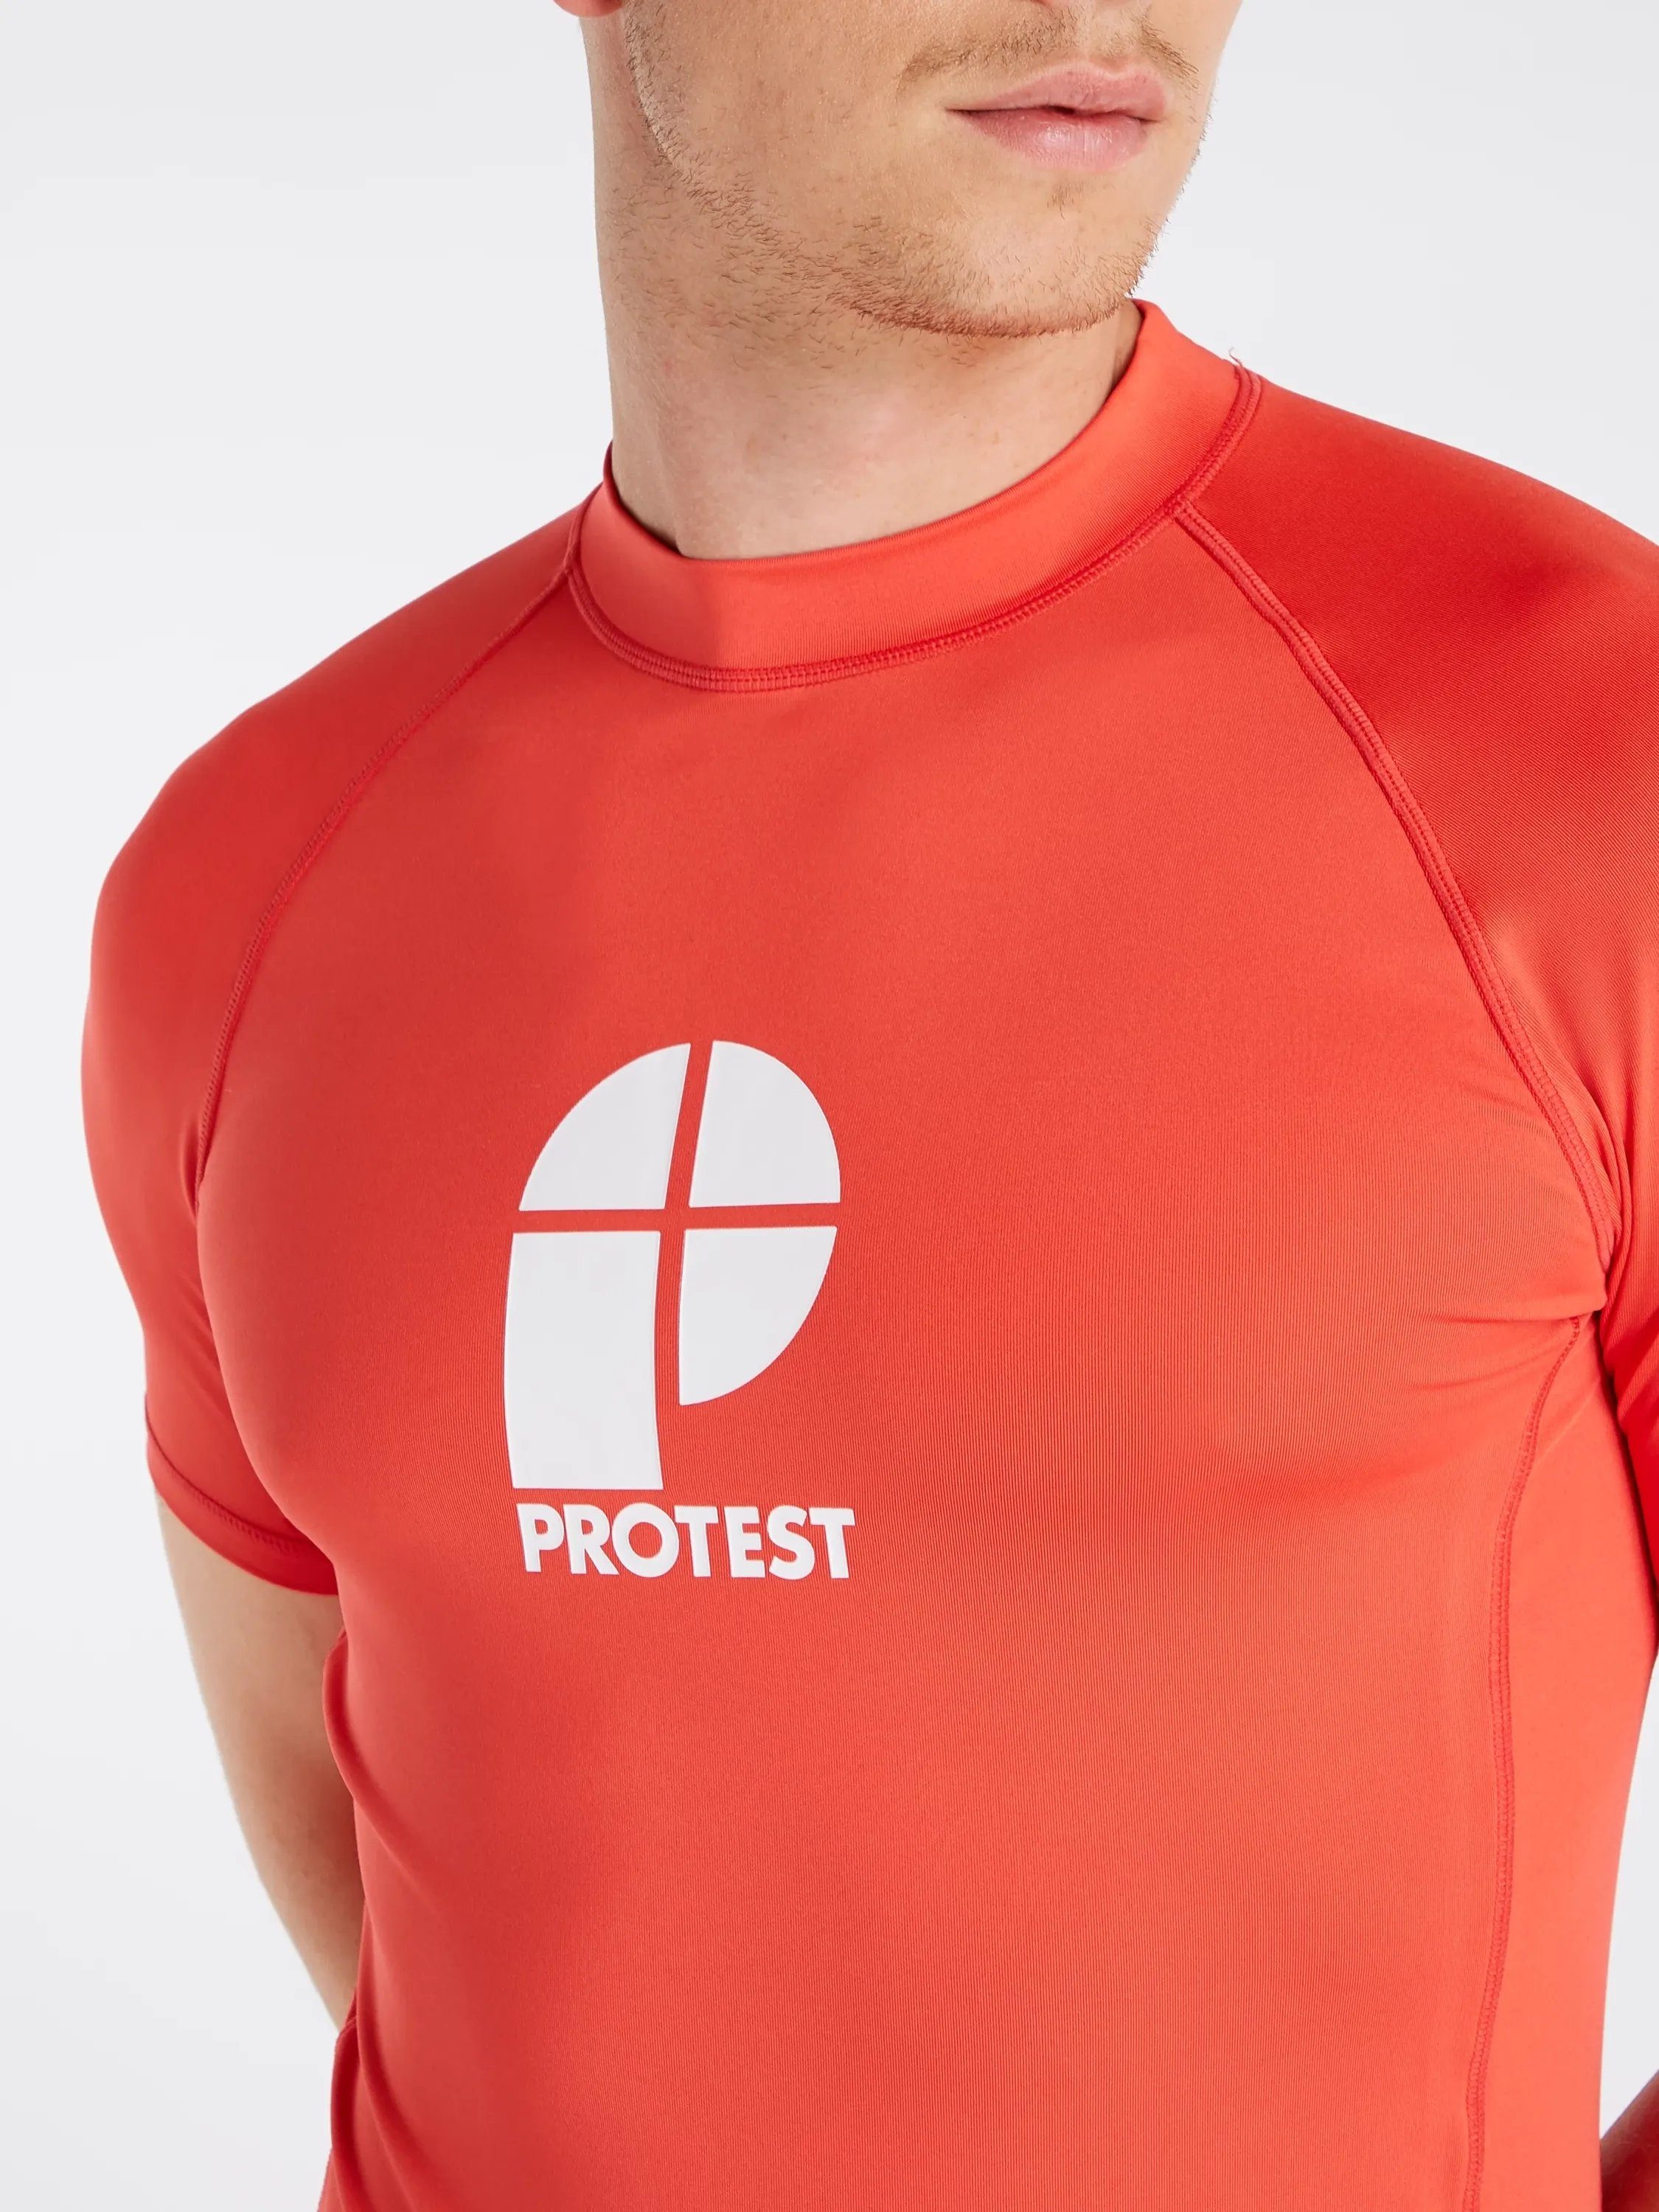 rashguard T-Shirt Tomato sleeve PRTCATER short Protest